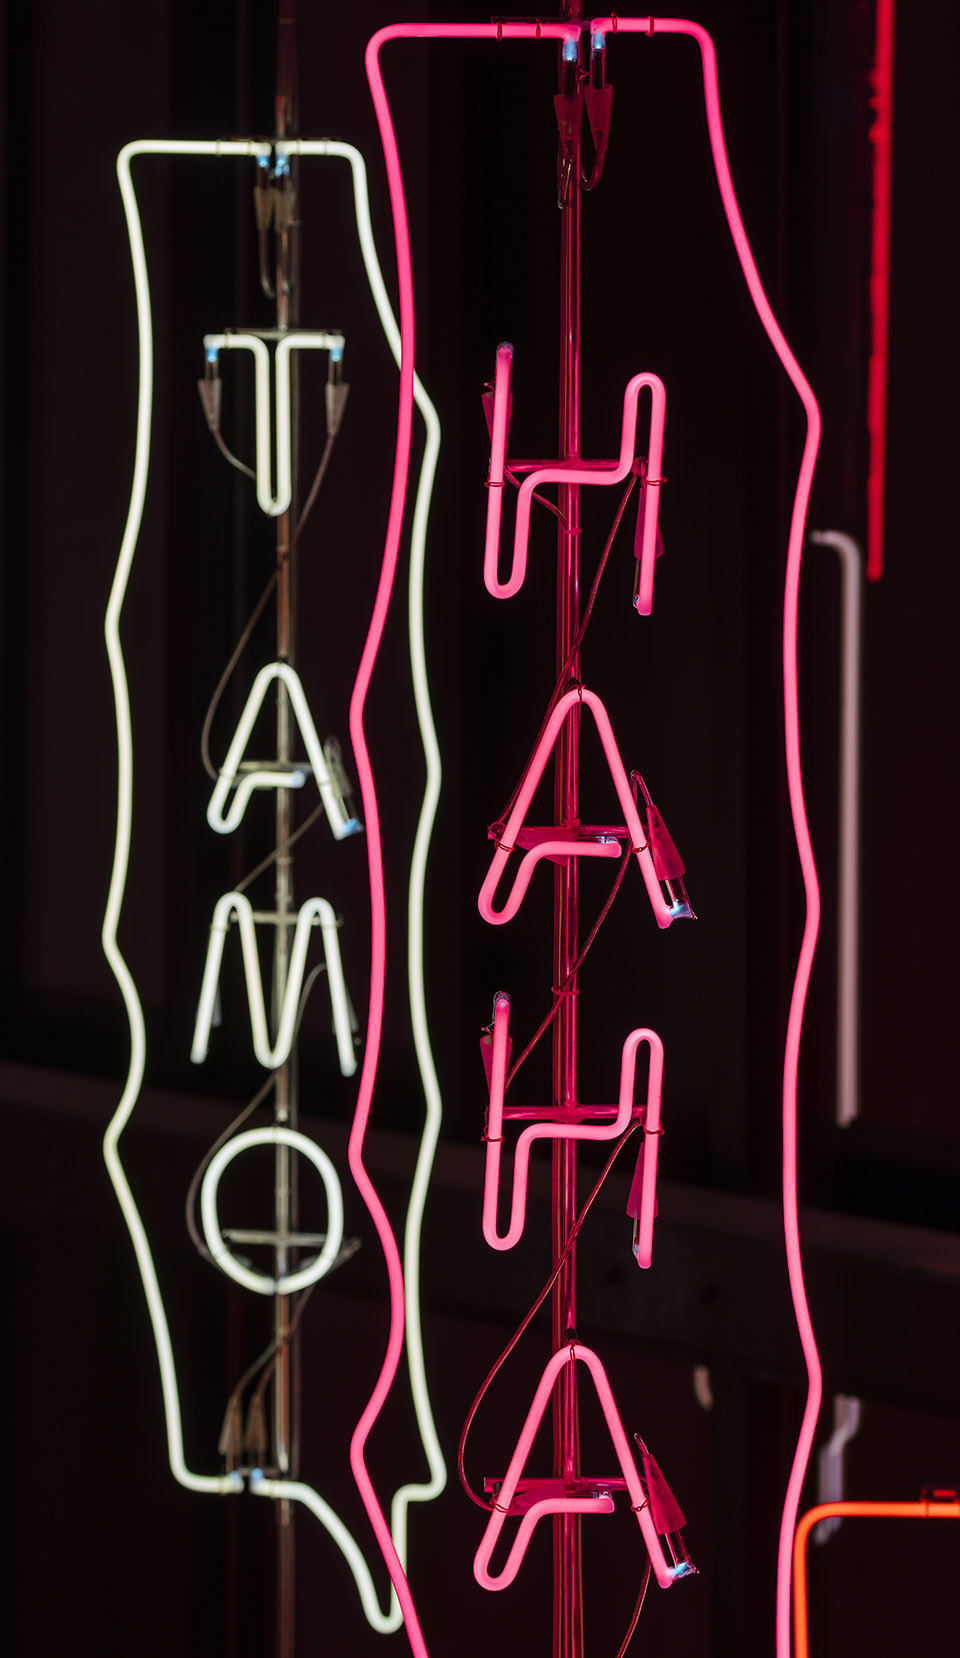 YOYO永久灯光艺术装置，马德里/流行文化与社交媒体的具象化体现-61